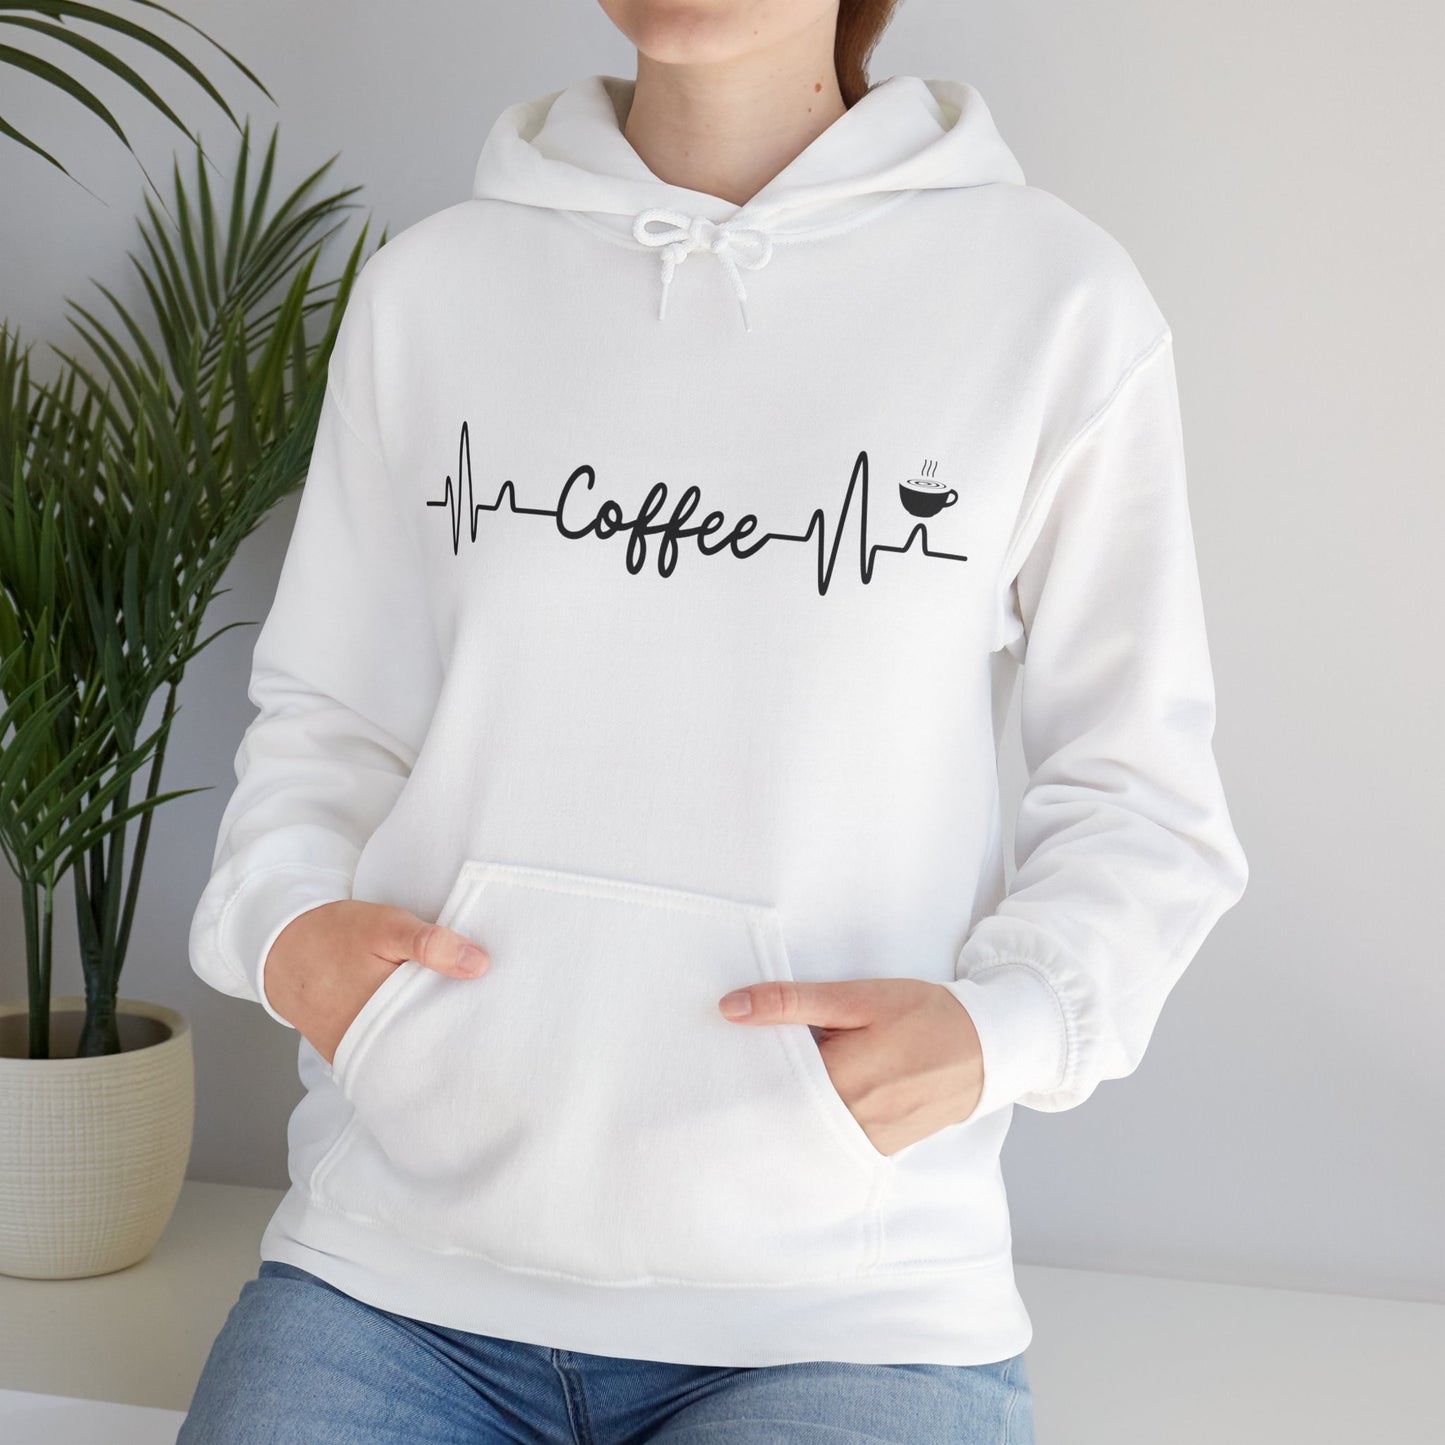 Heartbeat of Coffee - Hooded Sweatshirt S-5XL